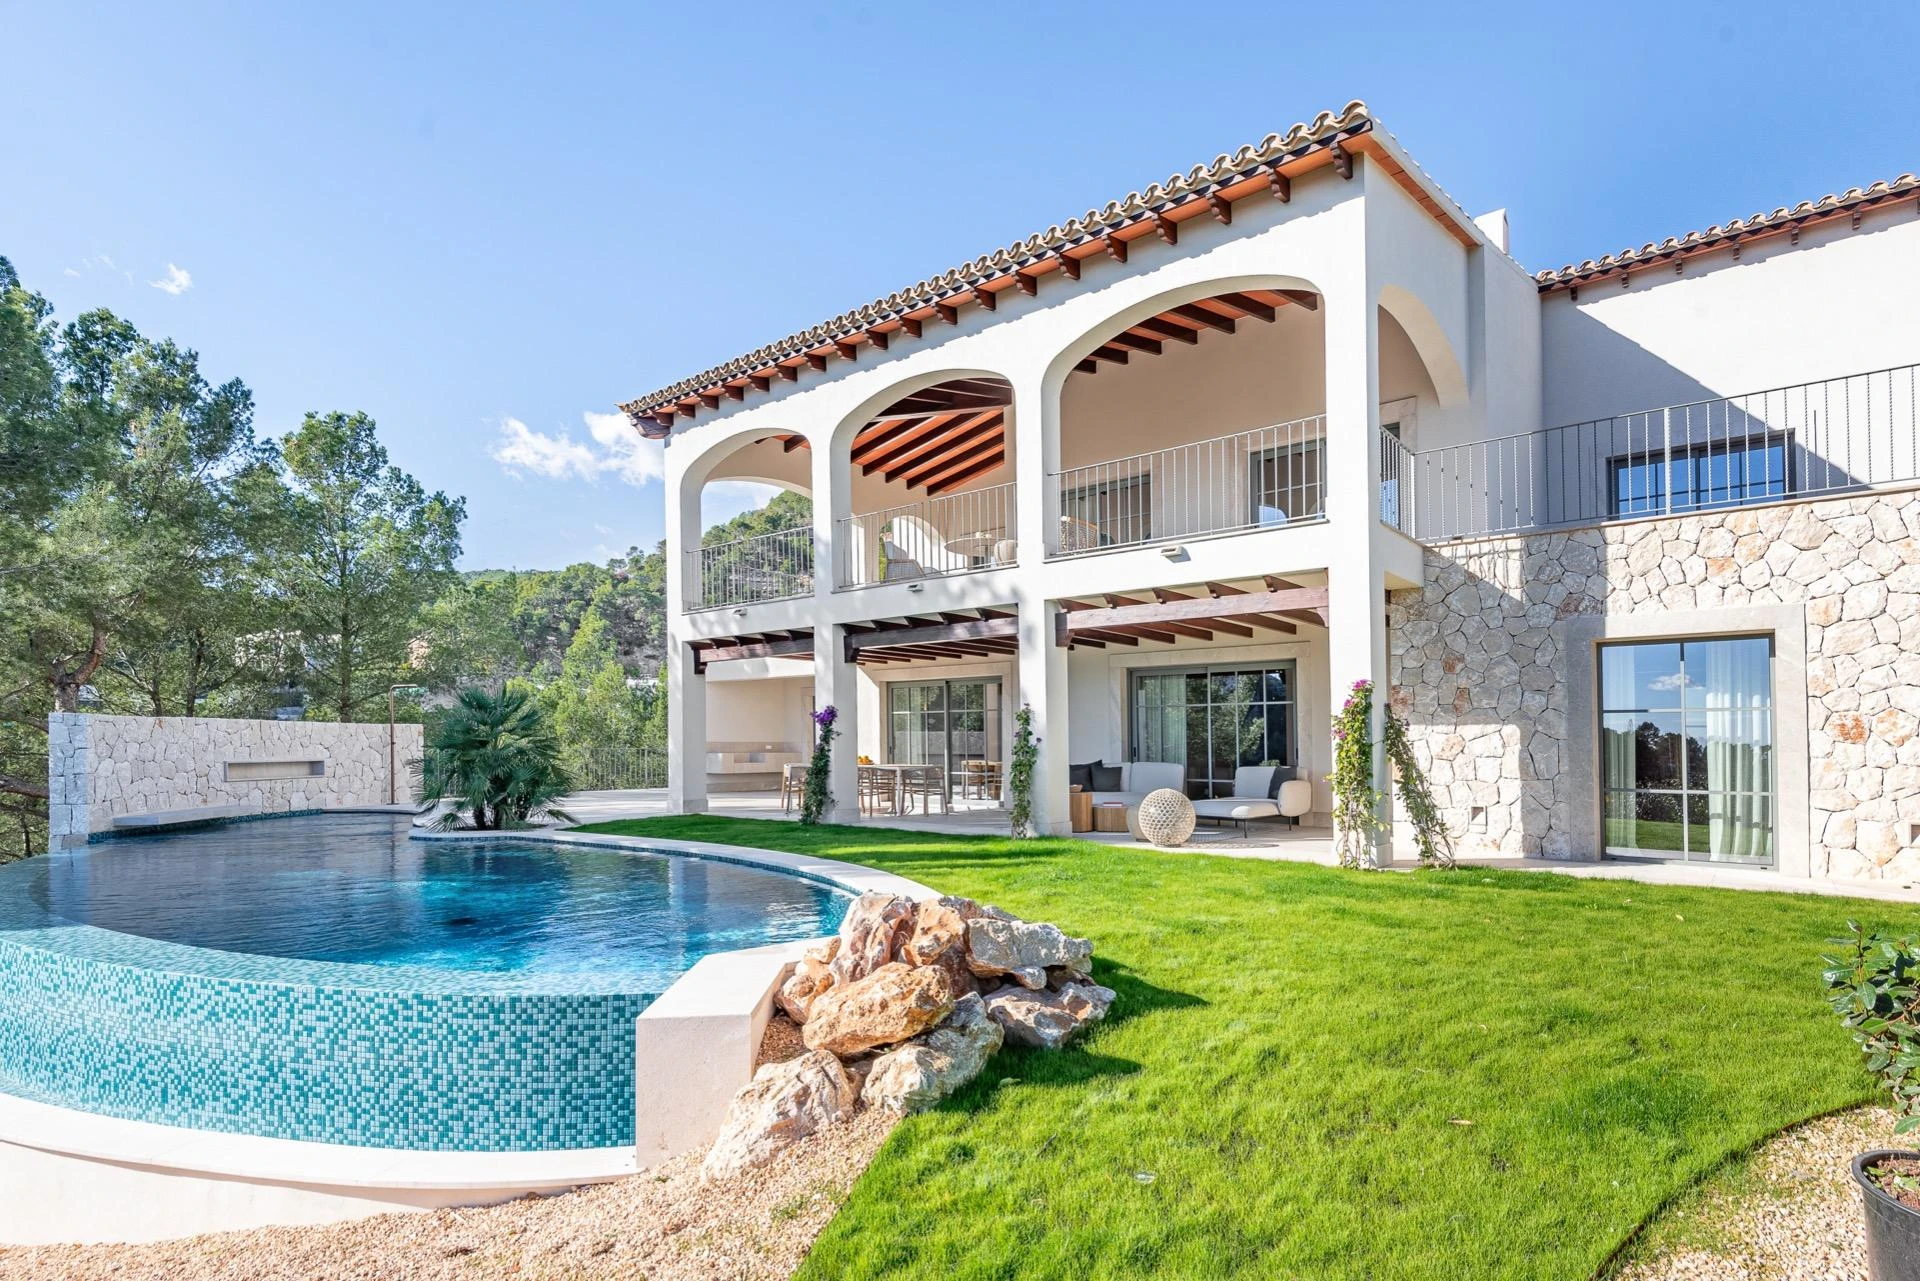 Schöne Villa in Son Vida, eine Mischung aus Tradition und Design mit unglaublichem Meerblick.